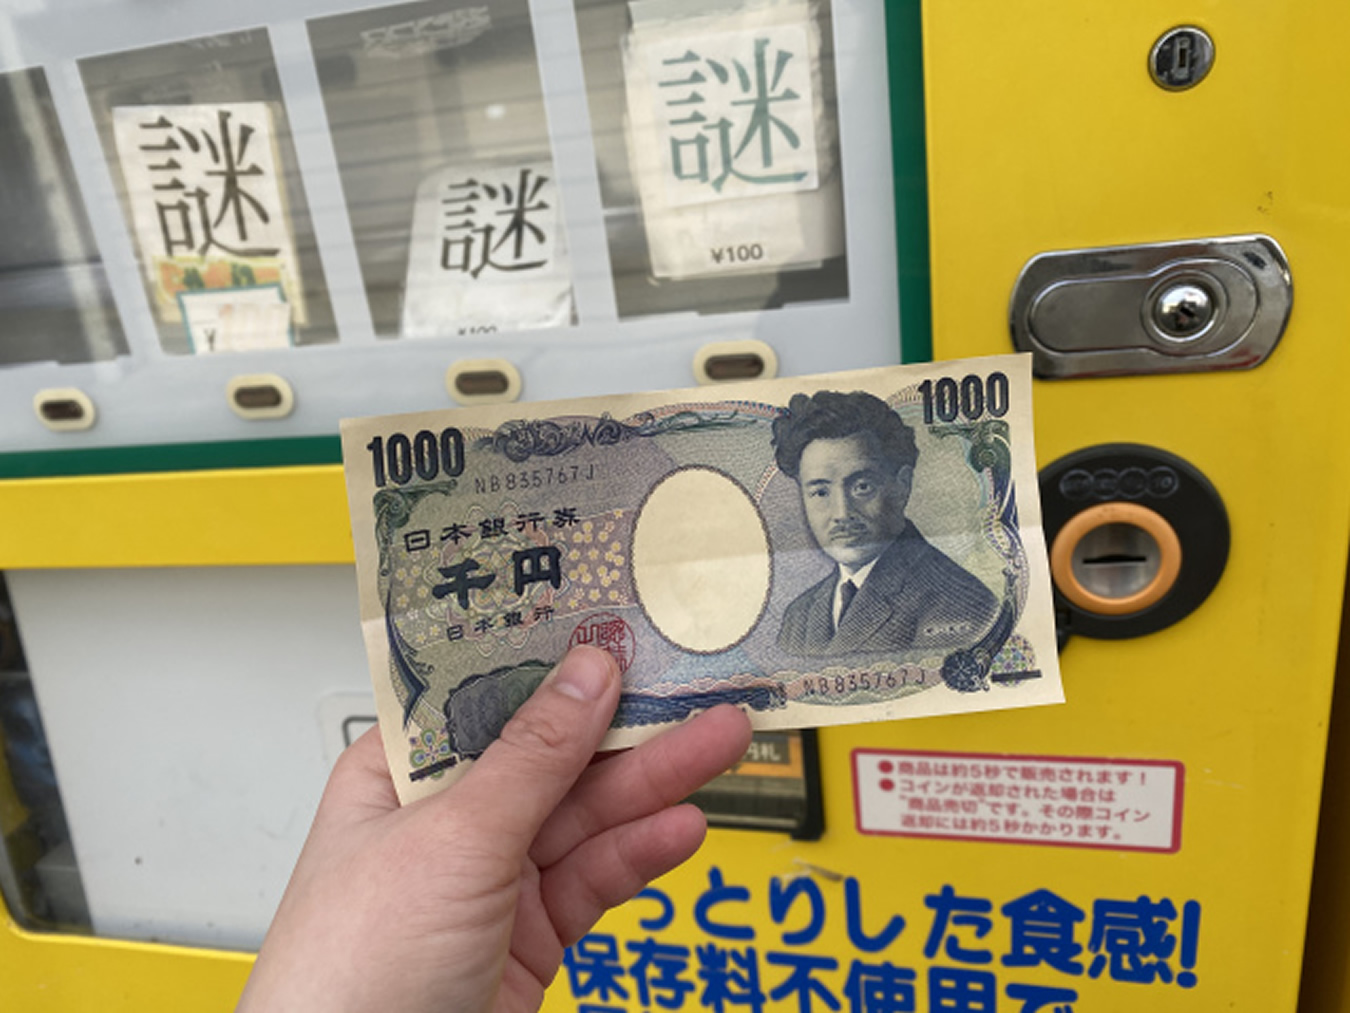 Máquina automática vende produtos misteriosos no Japão